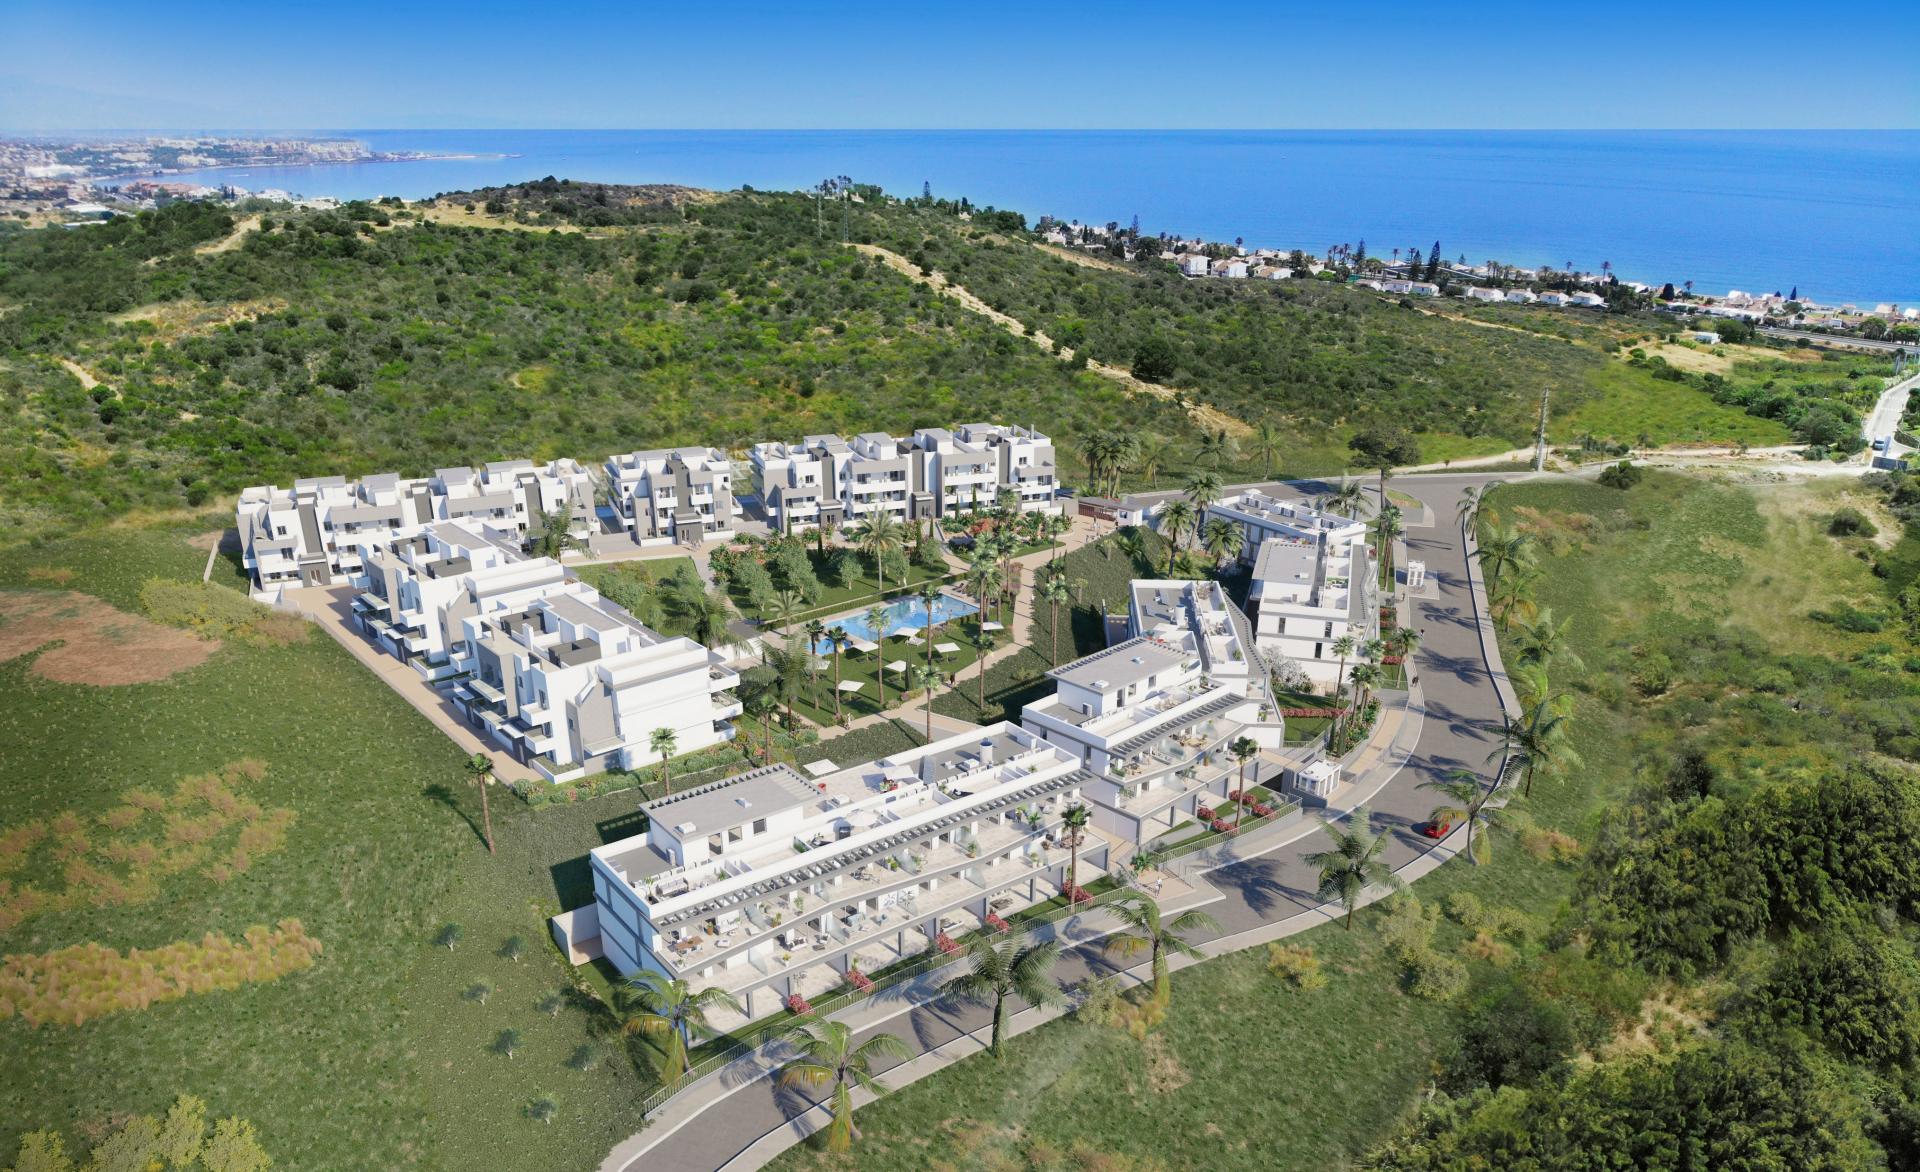 Un nuevo complejo de 66 apartamentos, a menos de 1 kilometro de la playa. Excelente relación calidad-precio.